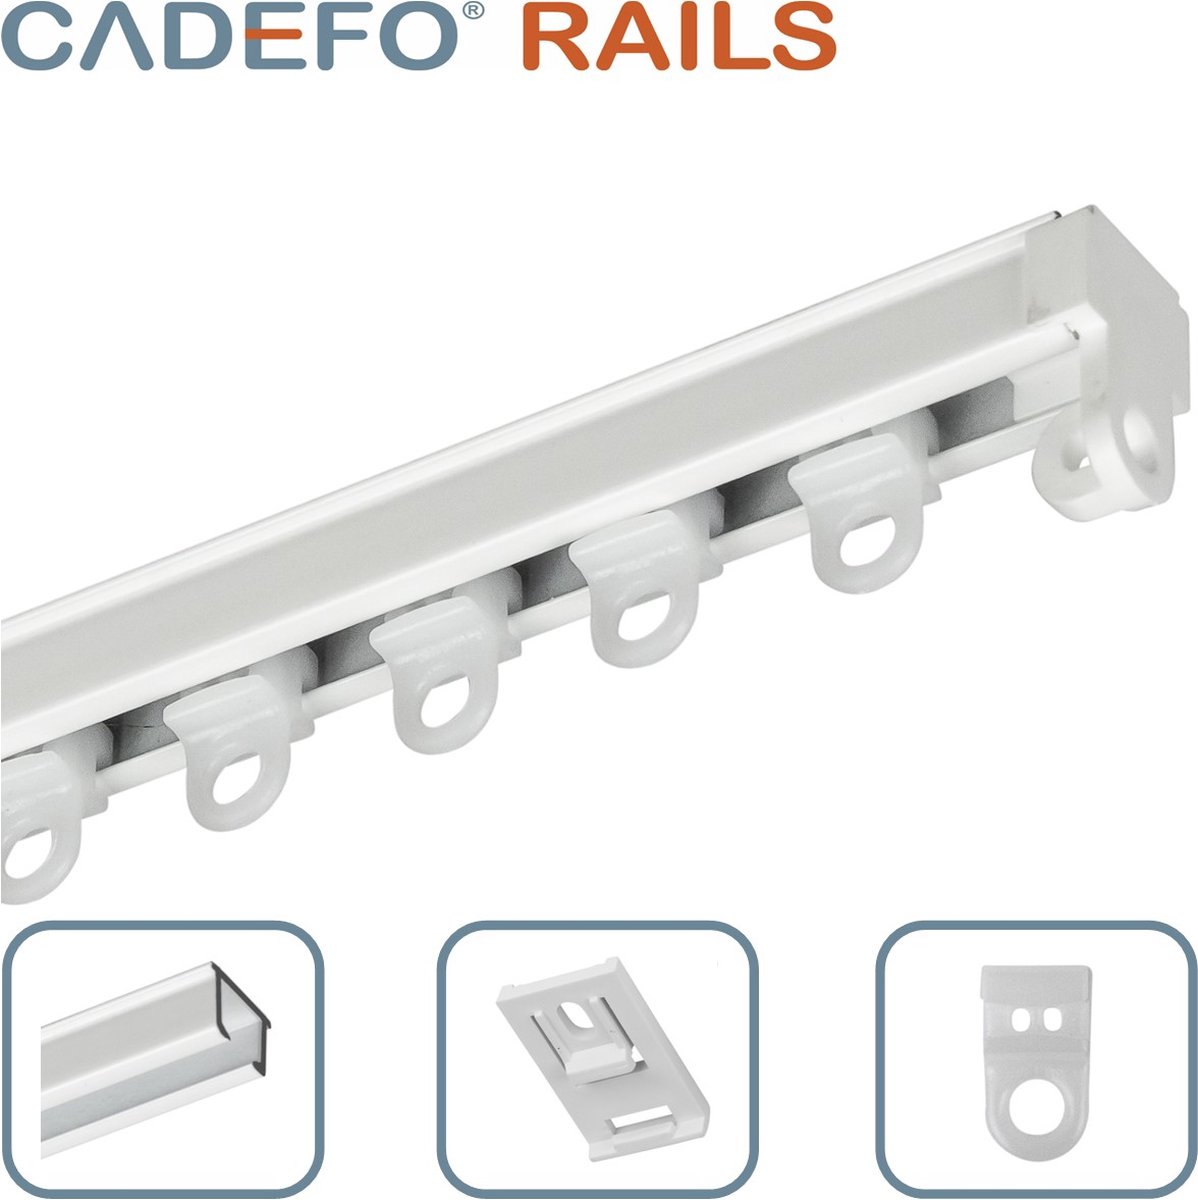 CADEFO RAILS (101 - 150 cm) Gordijnrails - Compleet op maat! - UIT 1 STUK - Leverbaar tot 6 meter - Plafondbevestiging - Lengte 143 cm